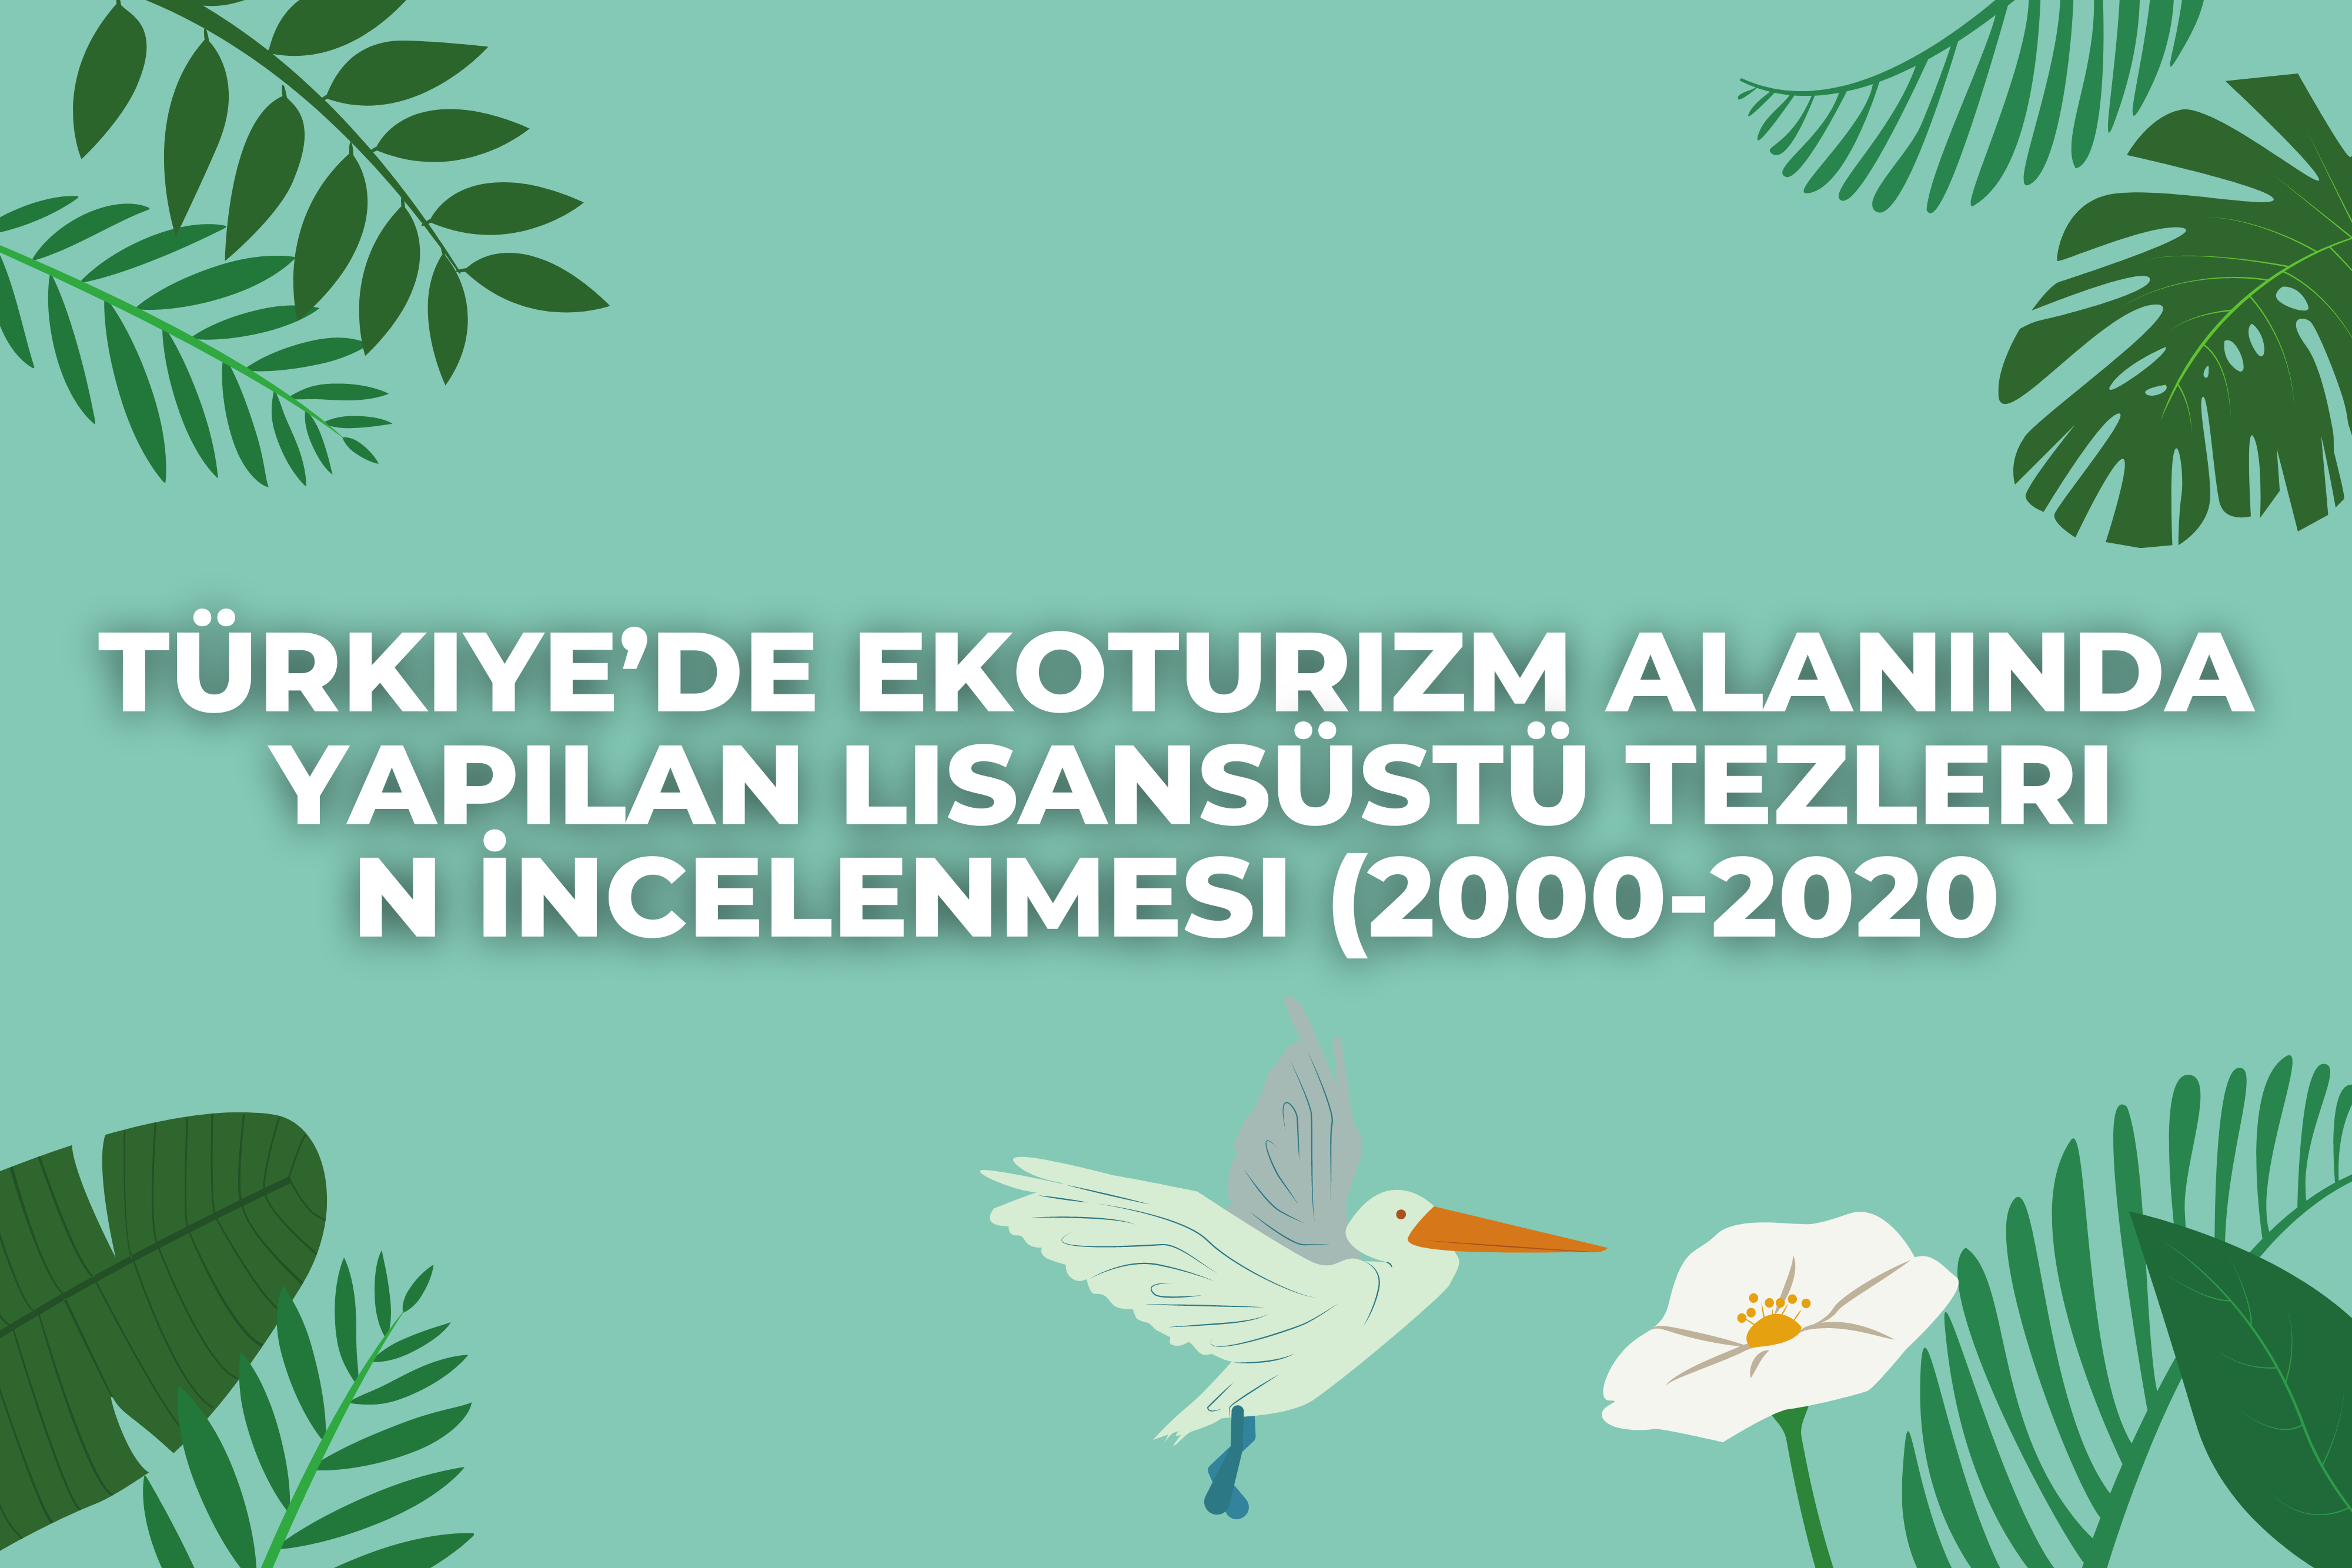 Türkiye’de Ekoturizm Alanında Yapılan Lisansüstü Tezlerin İncelenmesi (2000-2020)